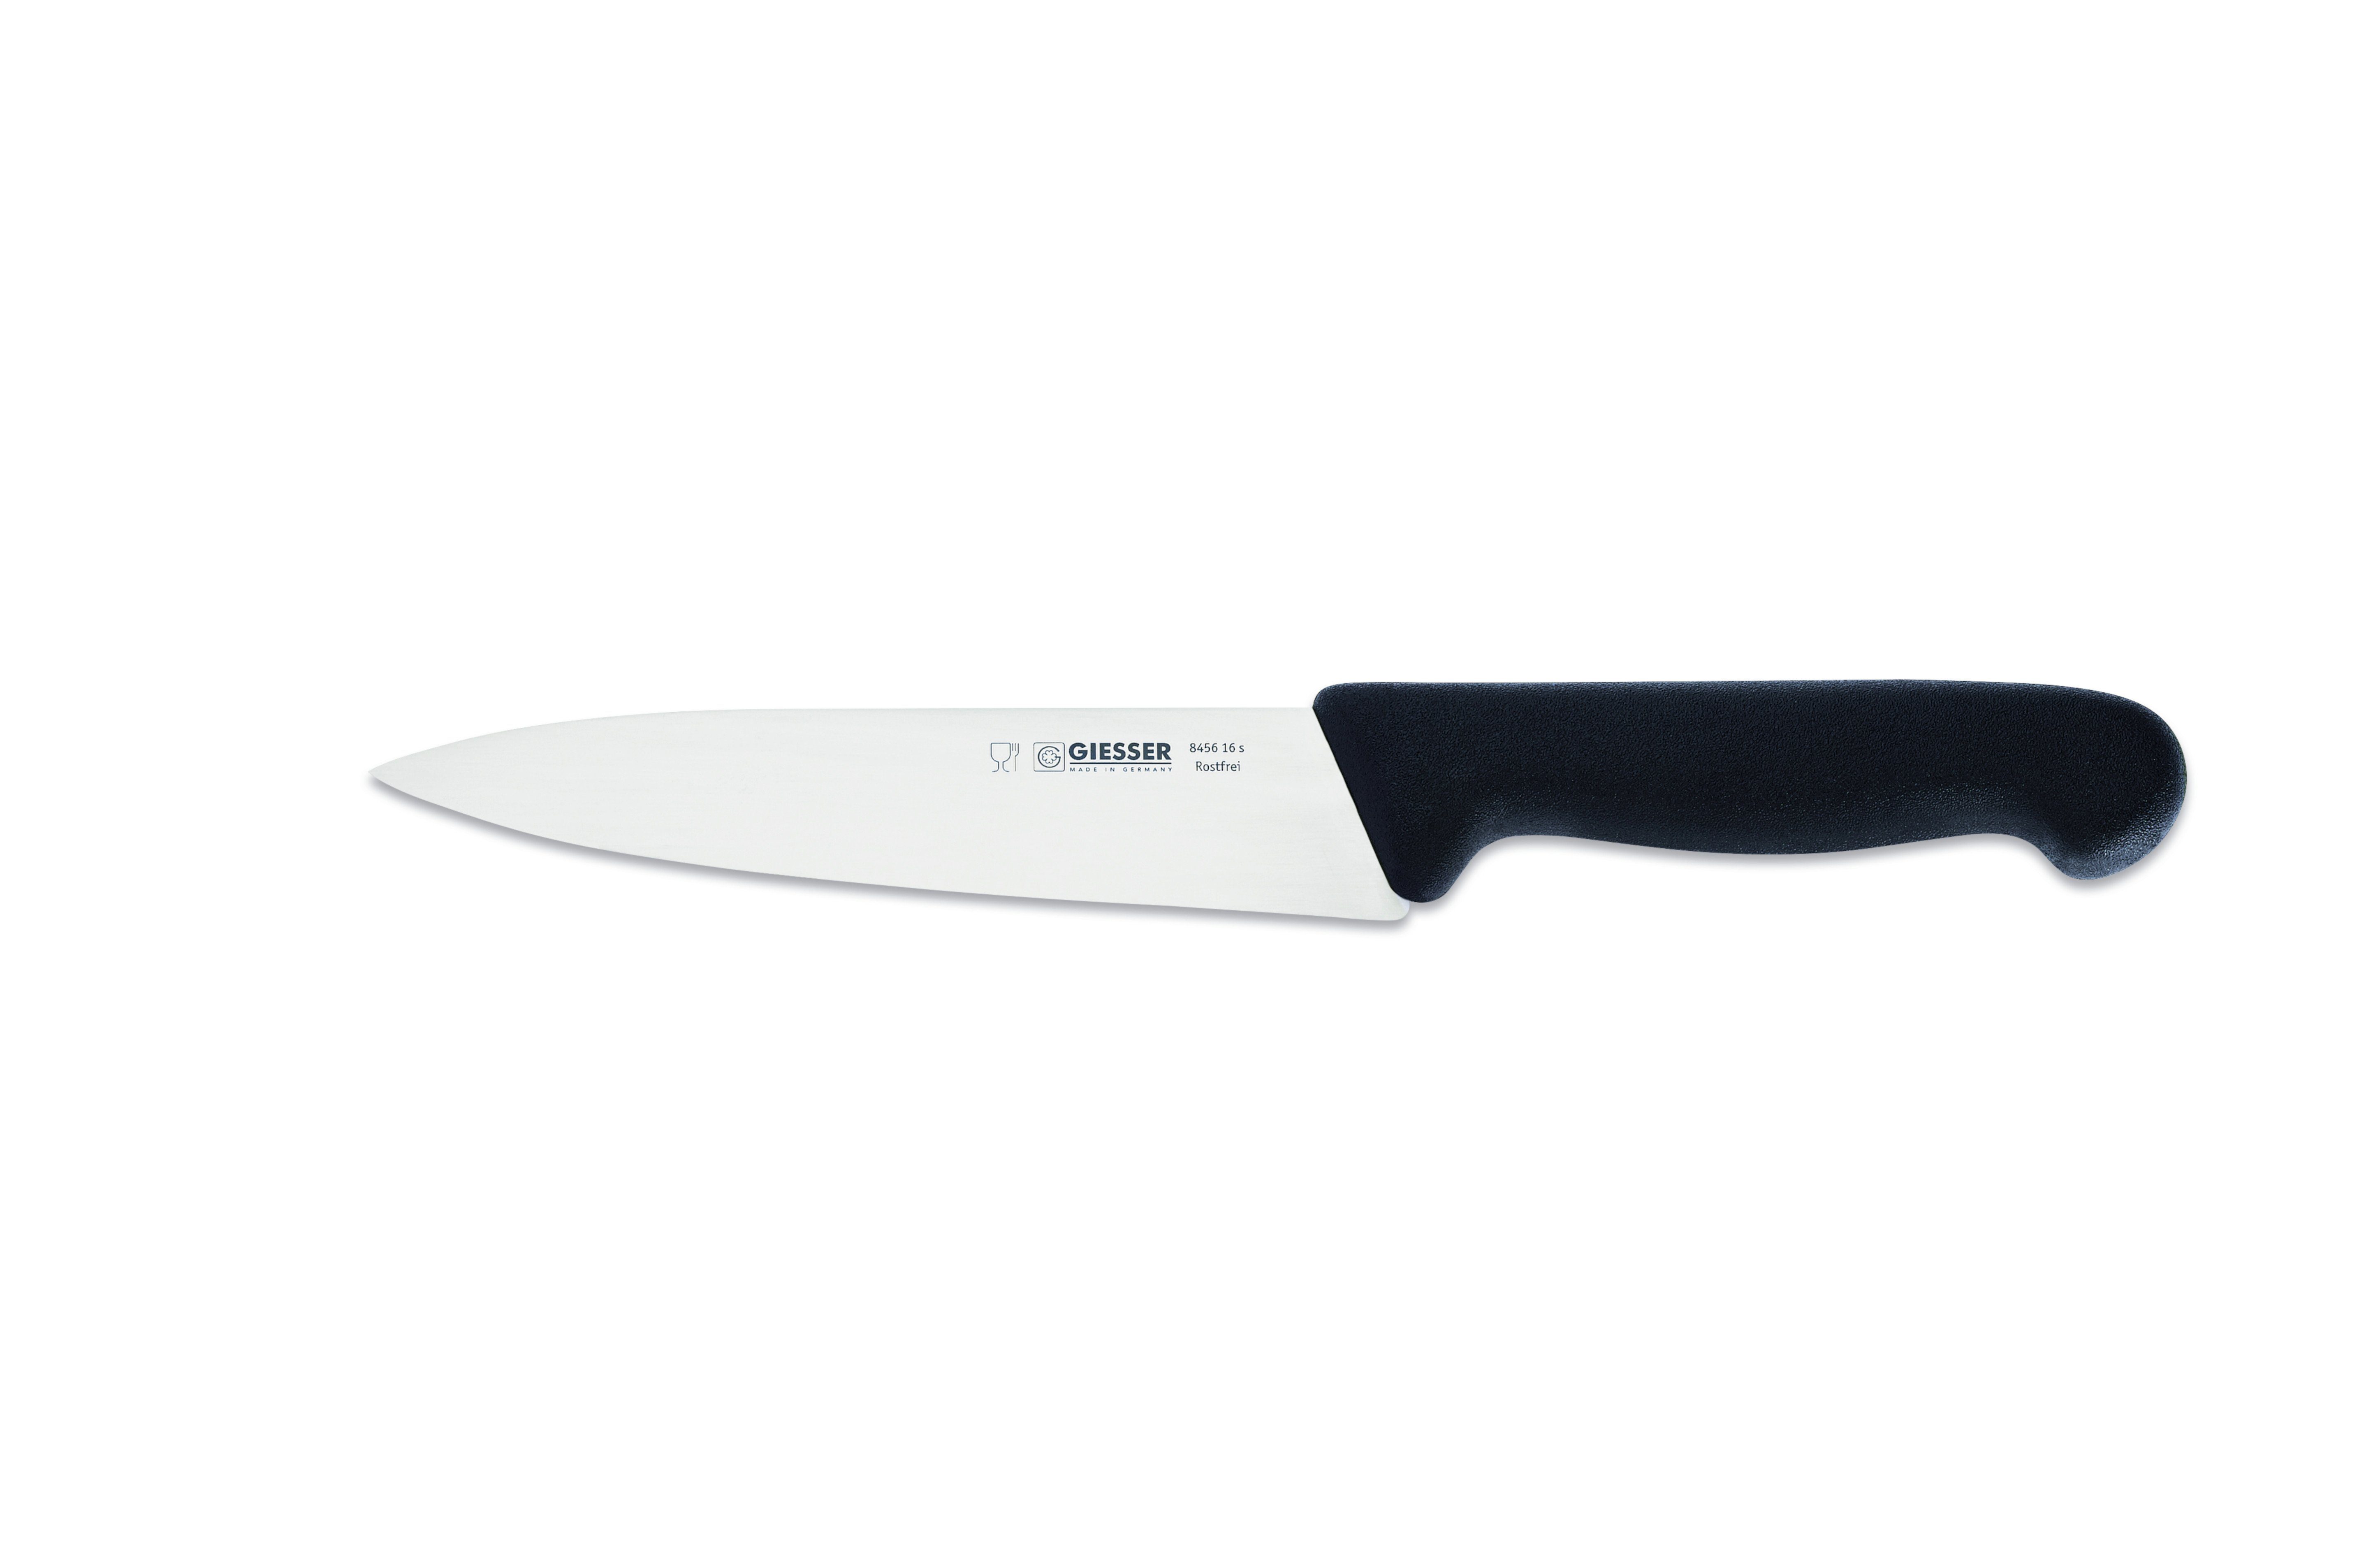 Giesser Messer Kochmesser Küchenmesser scharf mittelspitze jede 8456, Ideal schmale, Küche Klinge, für Handabzug, schwarz